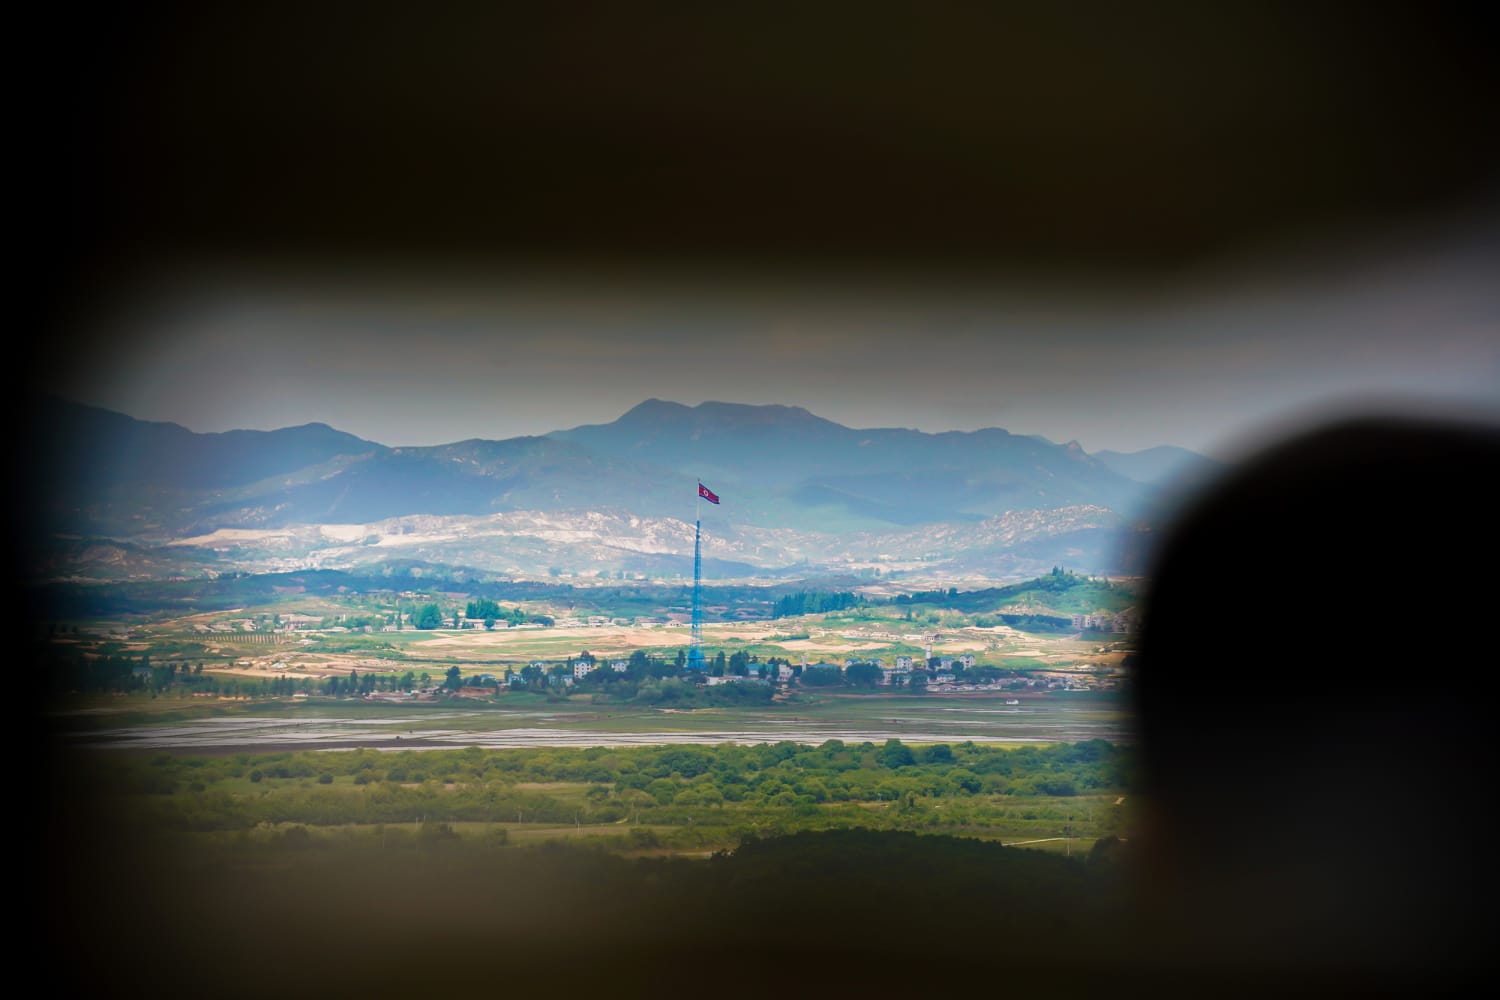 남북한의 취약한 평화를 감시하는 군인들에게 DMZ에서의 삶은 긴장된다